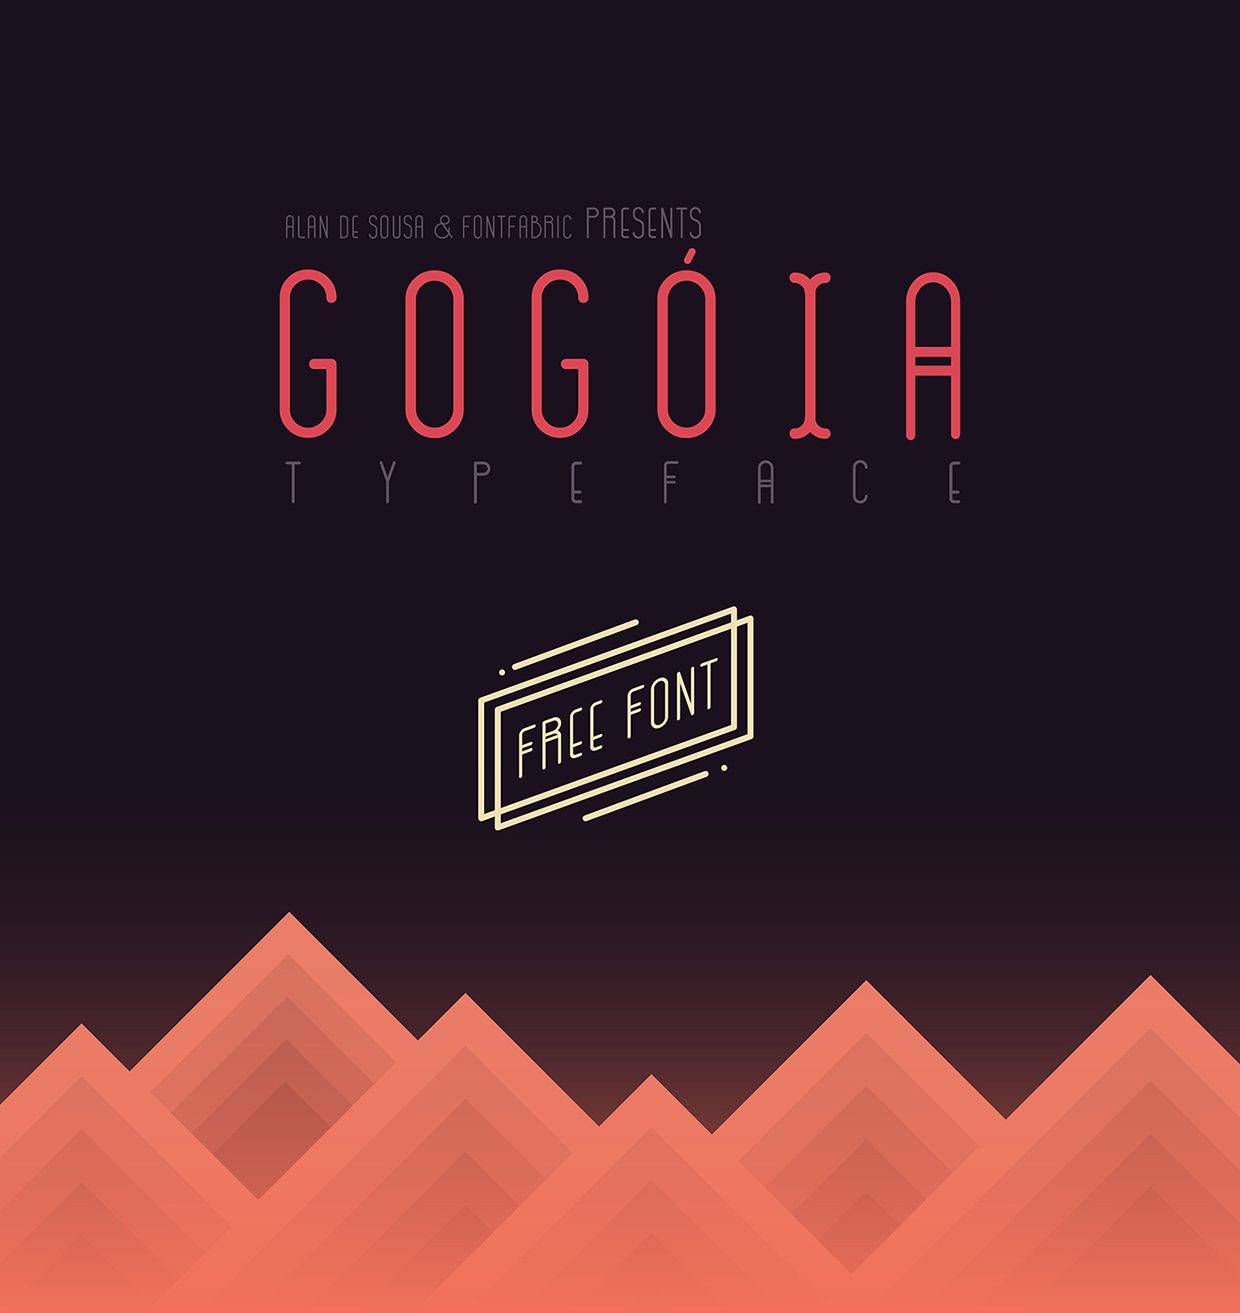 GOGOIA font